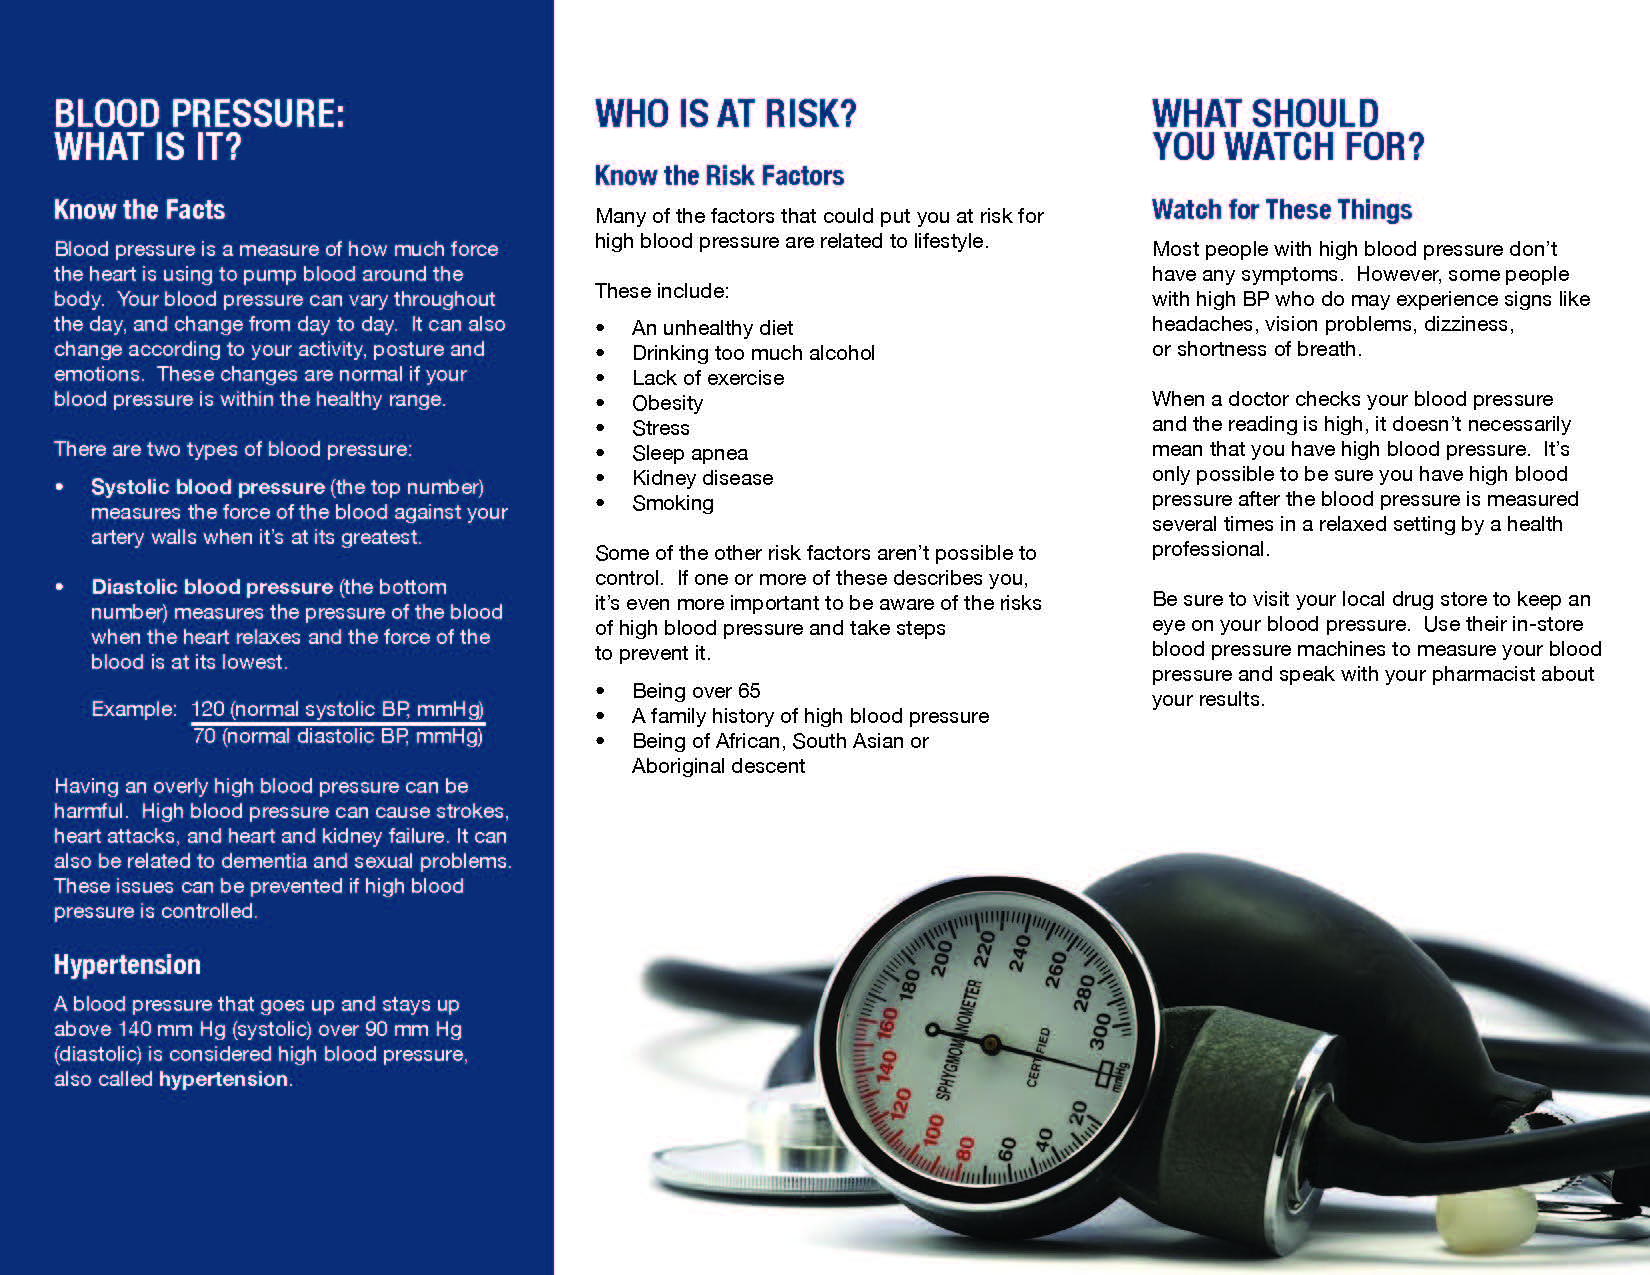 Blood Pressure, brochure